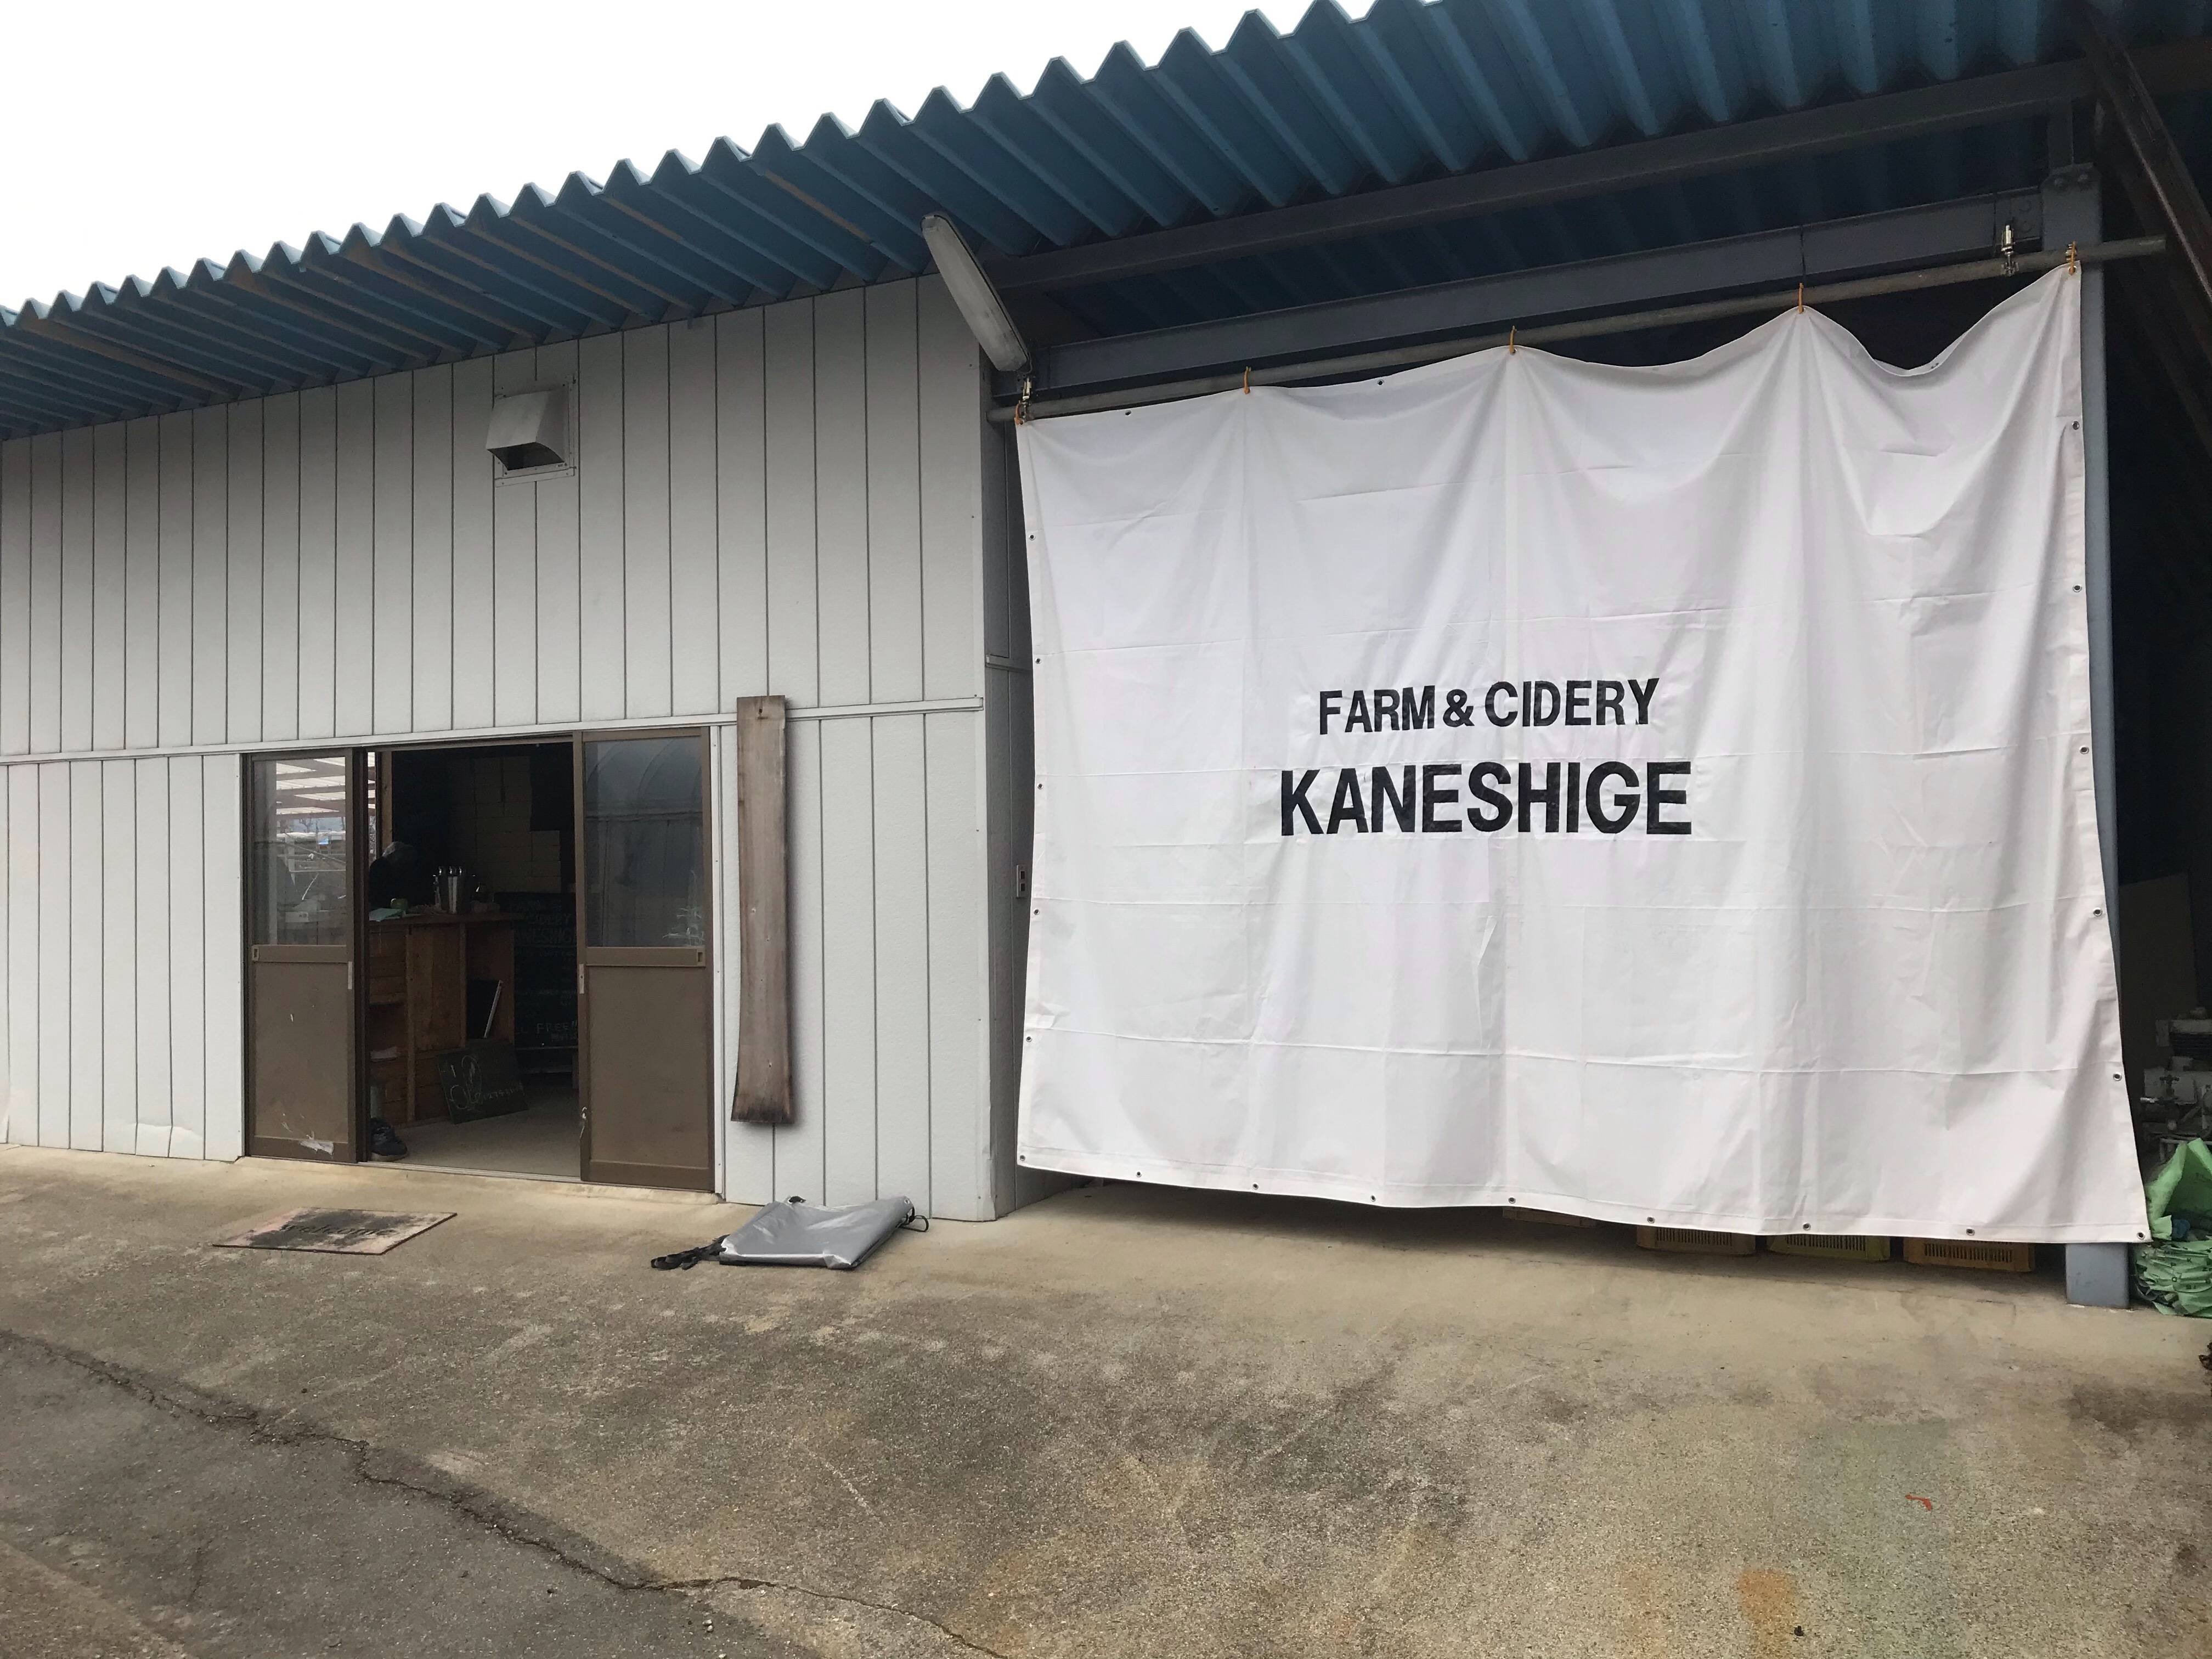 KANESHIGE’S DIY